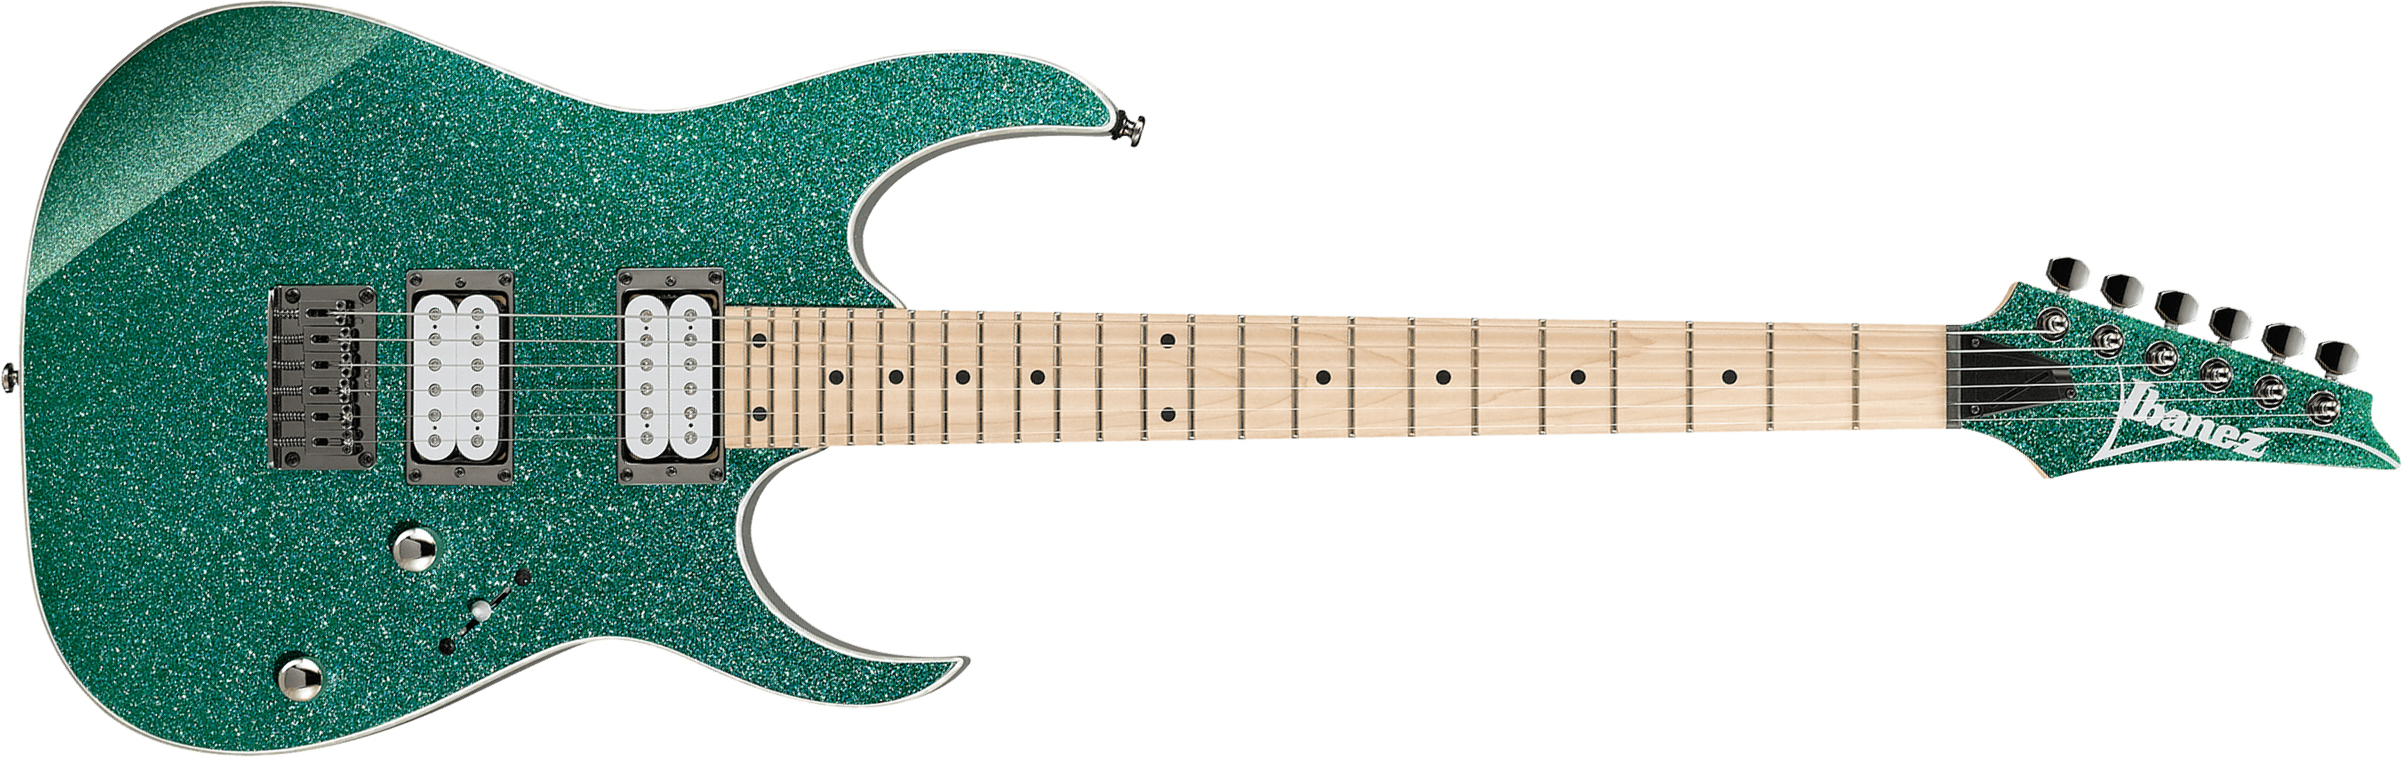 Ibanez Rg421msp Tsp Standard Ht Hh Mn - Turquoise Sparkle - Guitare Électrique Forme Str - Main picture